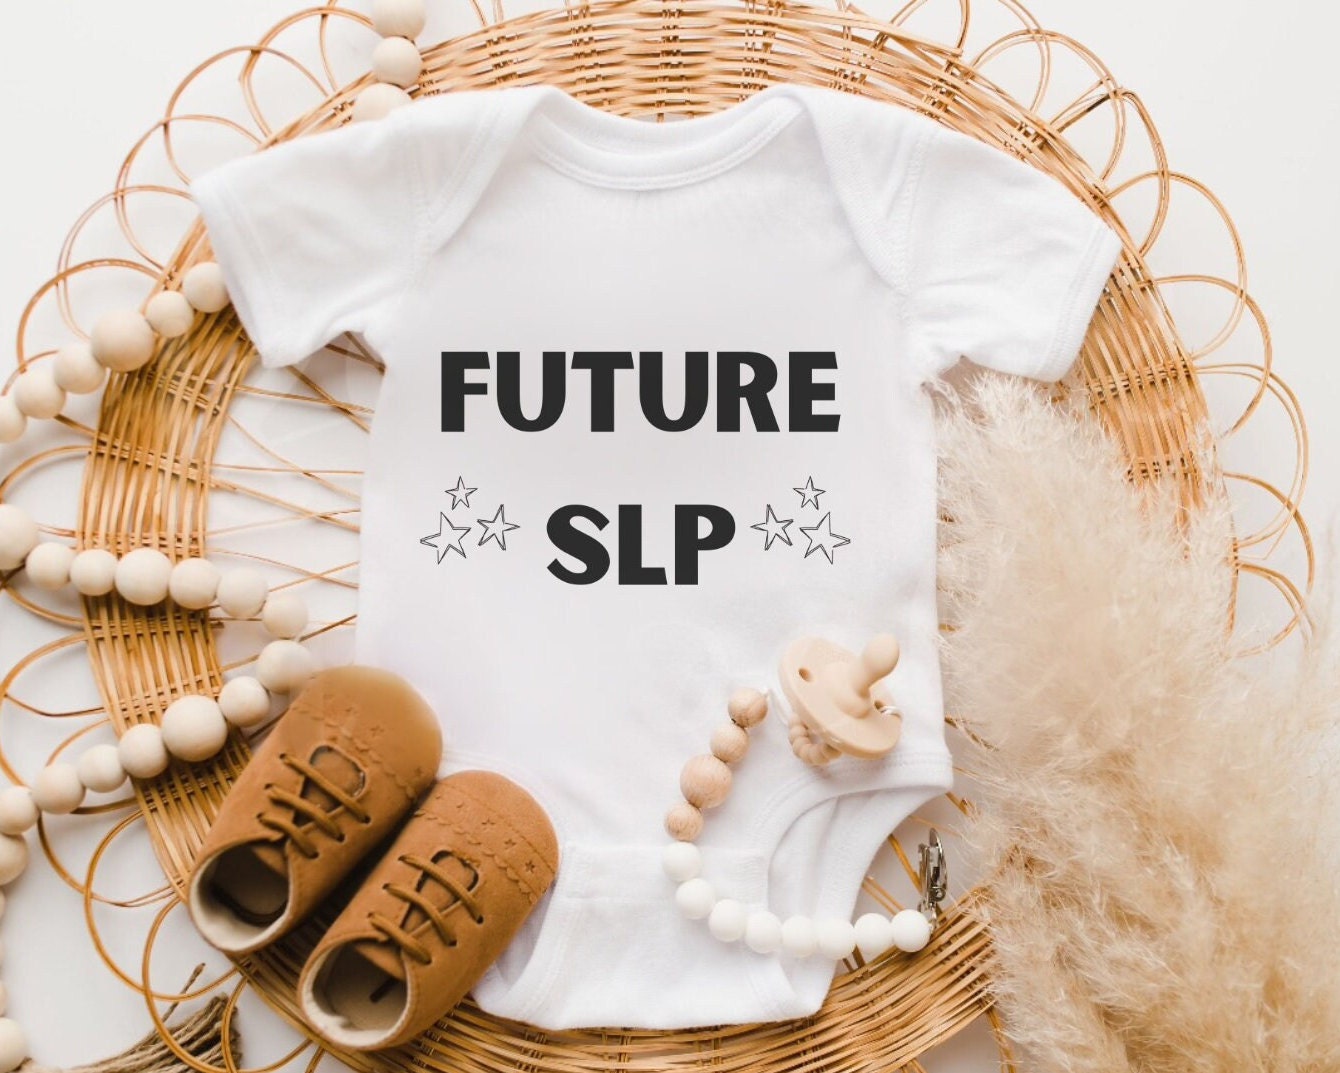 Slp baby - Etsy España